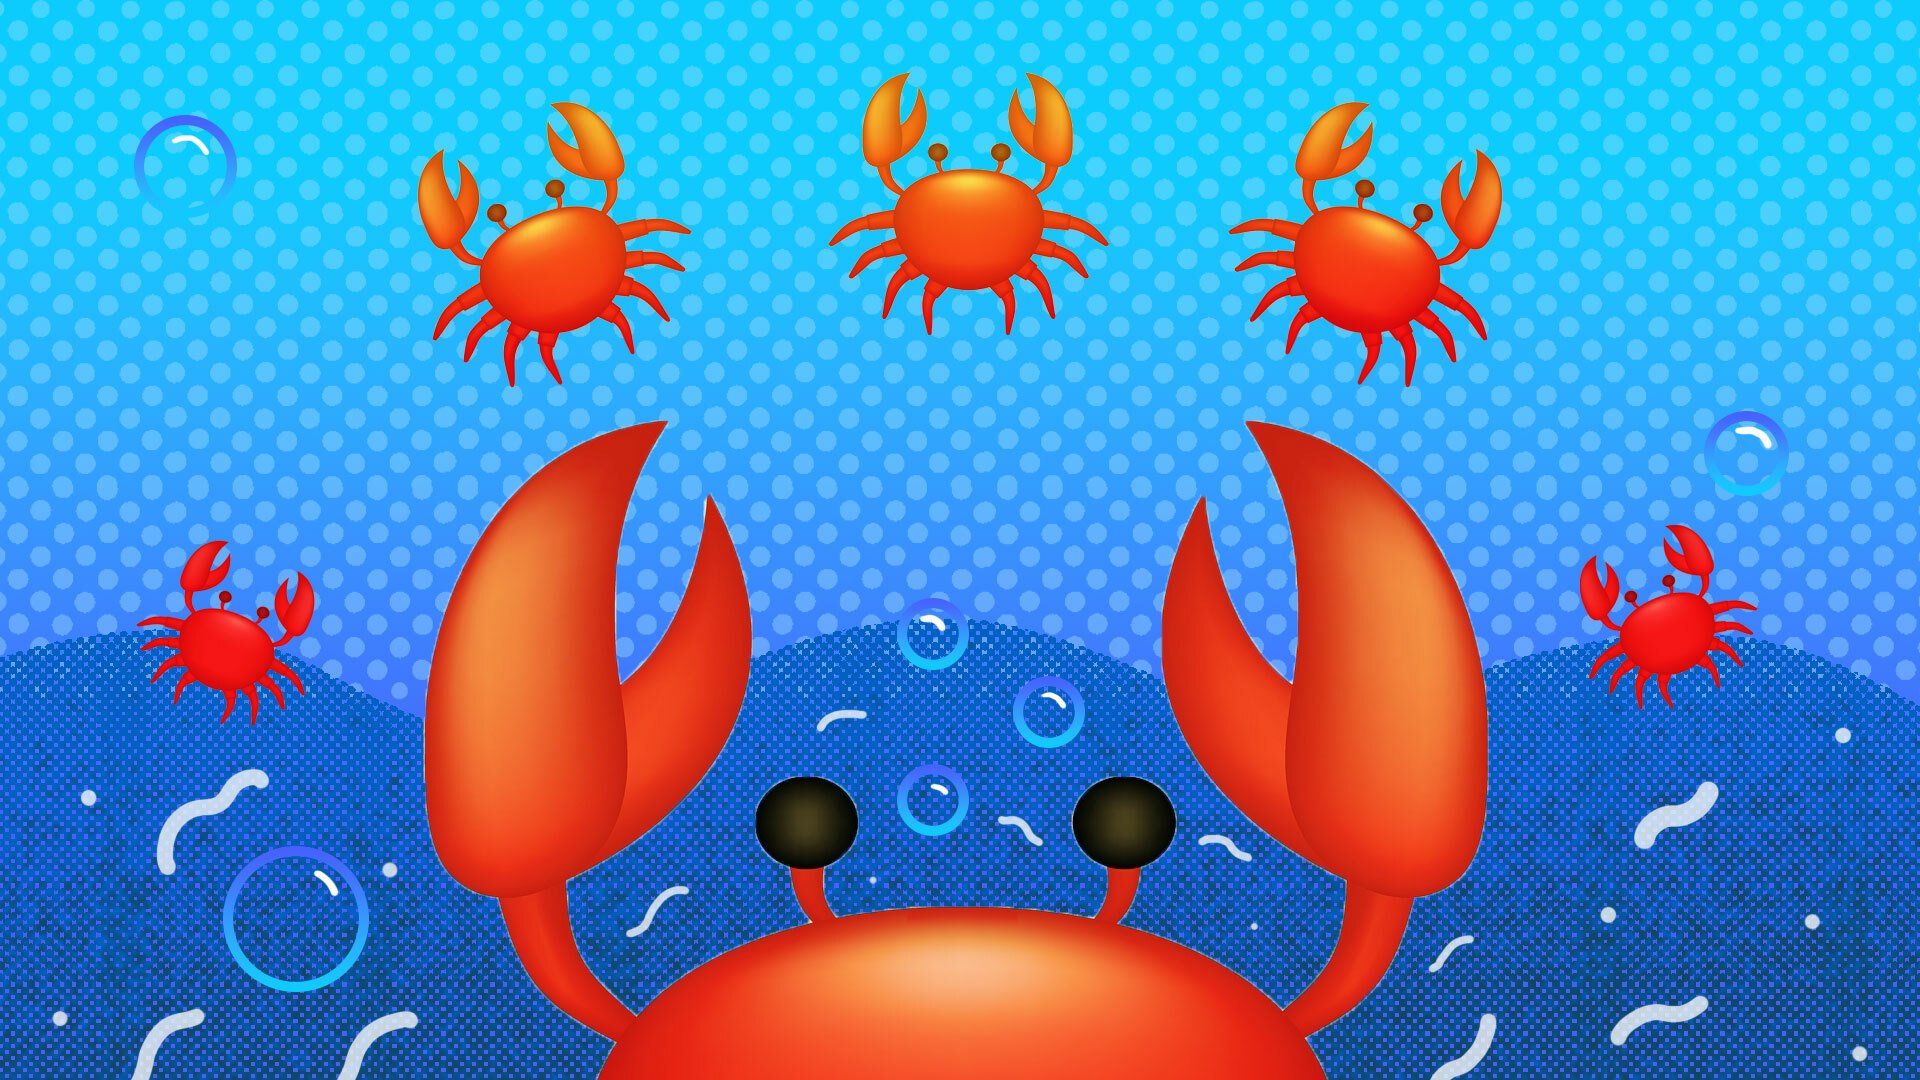 Crab emoji set against an aquatic backdrop